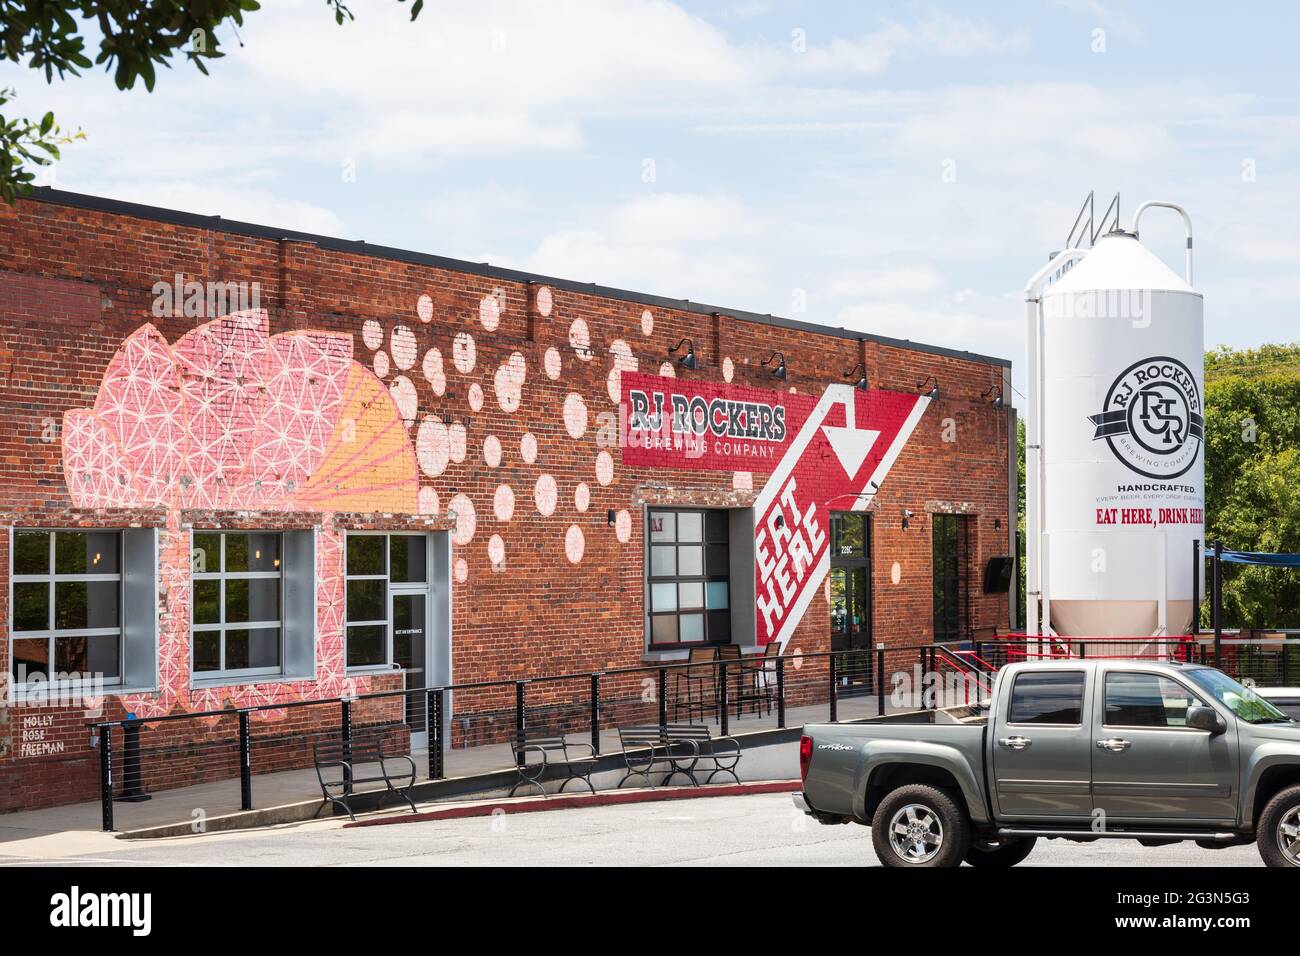 SPARTANBURG, SC, USA-13 GIUGNO 2021: Immagine della società di birra RJ Rockers, che mostra l'edificio, il parcheggio, il serbatoio per la birra bianco, i cartelli e il logo. Horizonta Foto Stock